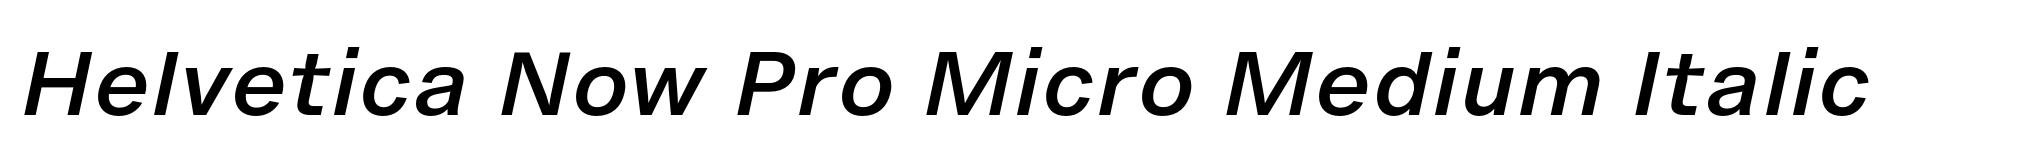 Helvetica Now Pro Micro Medium Italic image